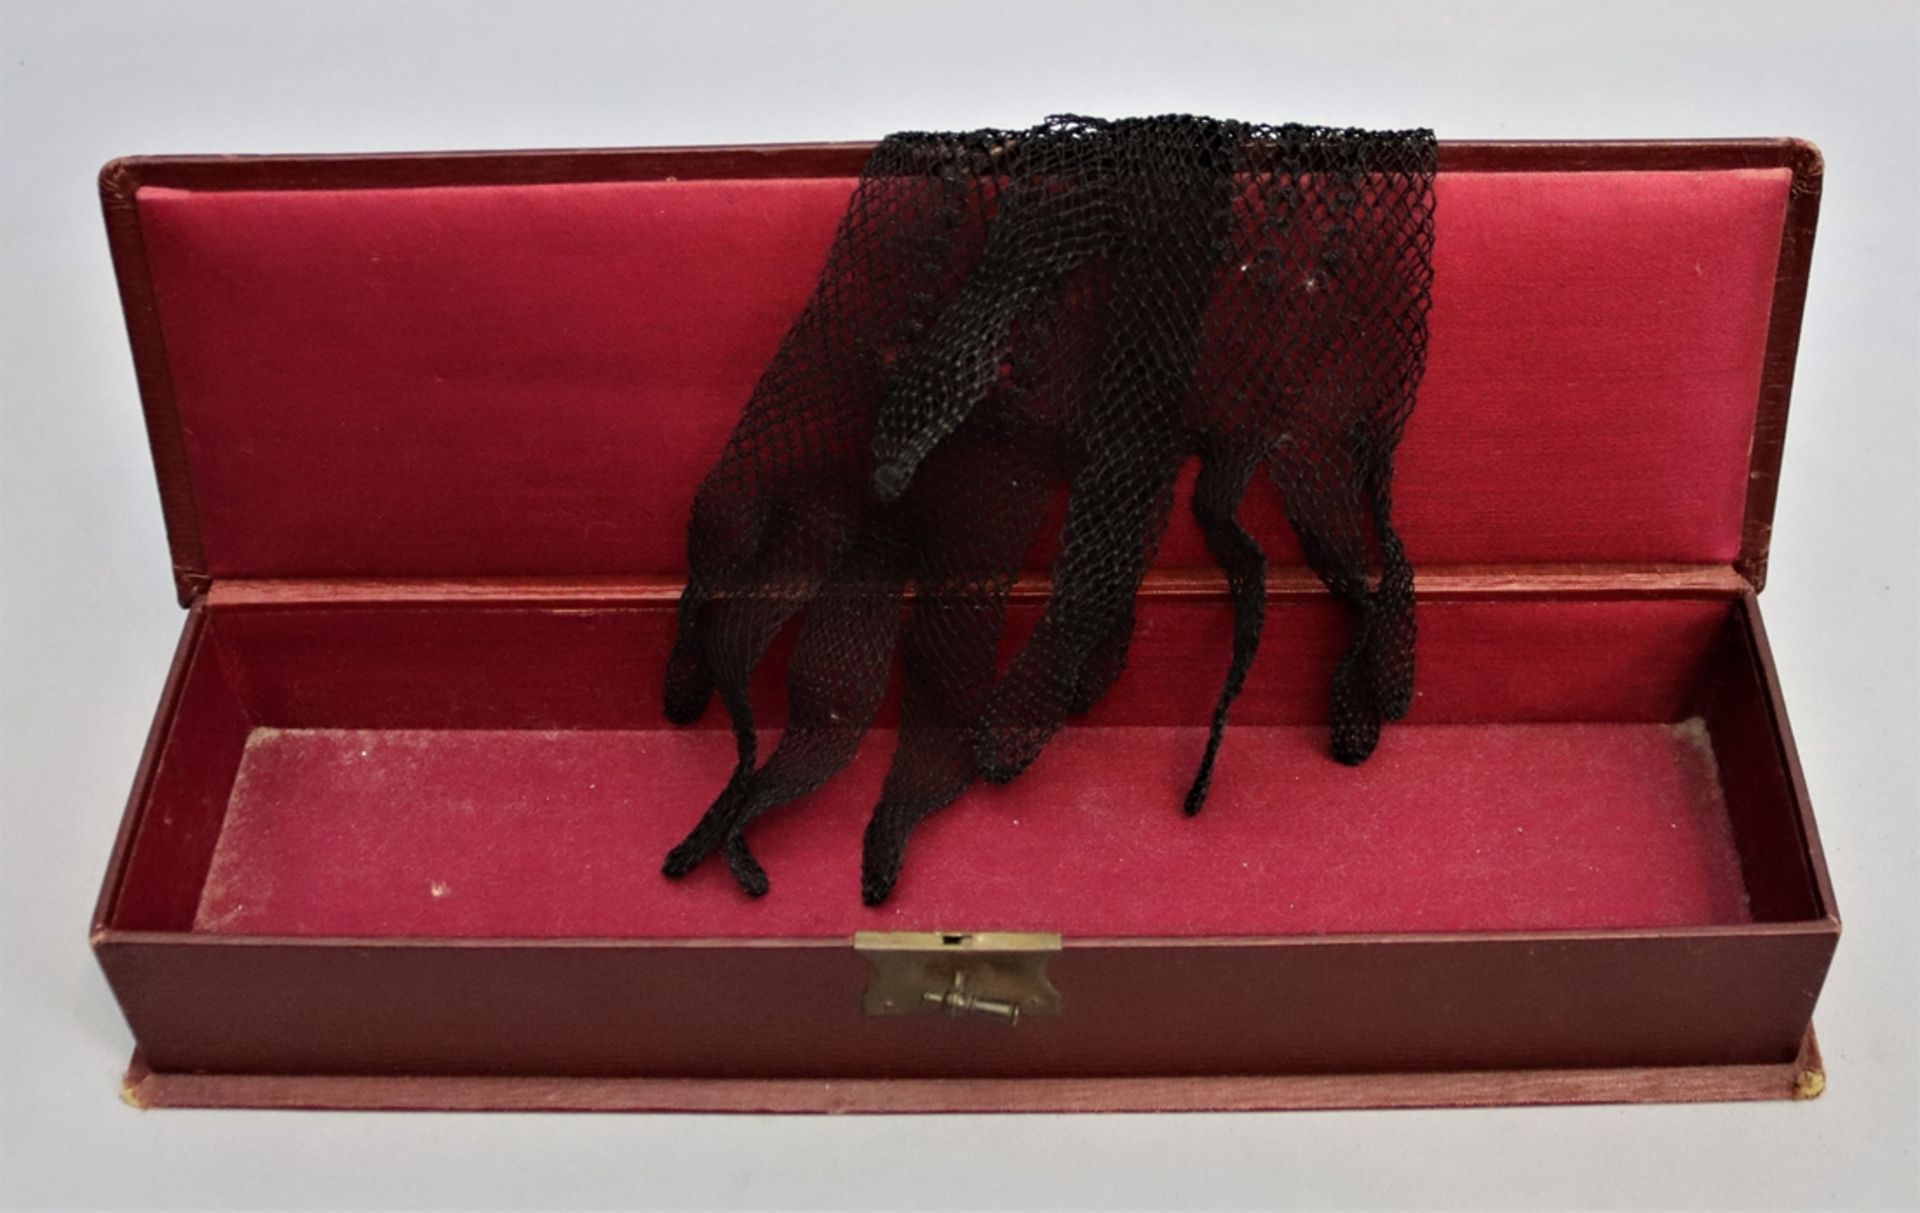 Handschuhbox mit Handschuh deutsch um 1900, handgefertigtes lederbezogenes innen mit Stoff ausgesch - Bild 2 aus 2